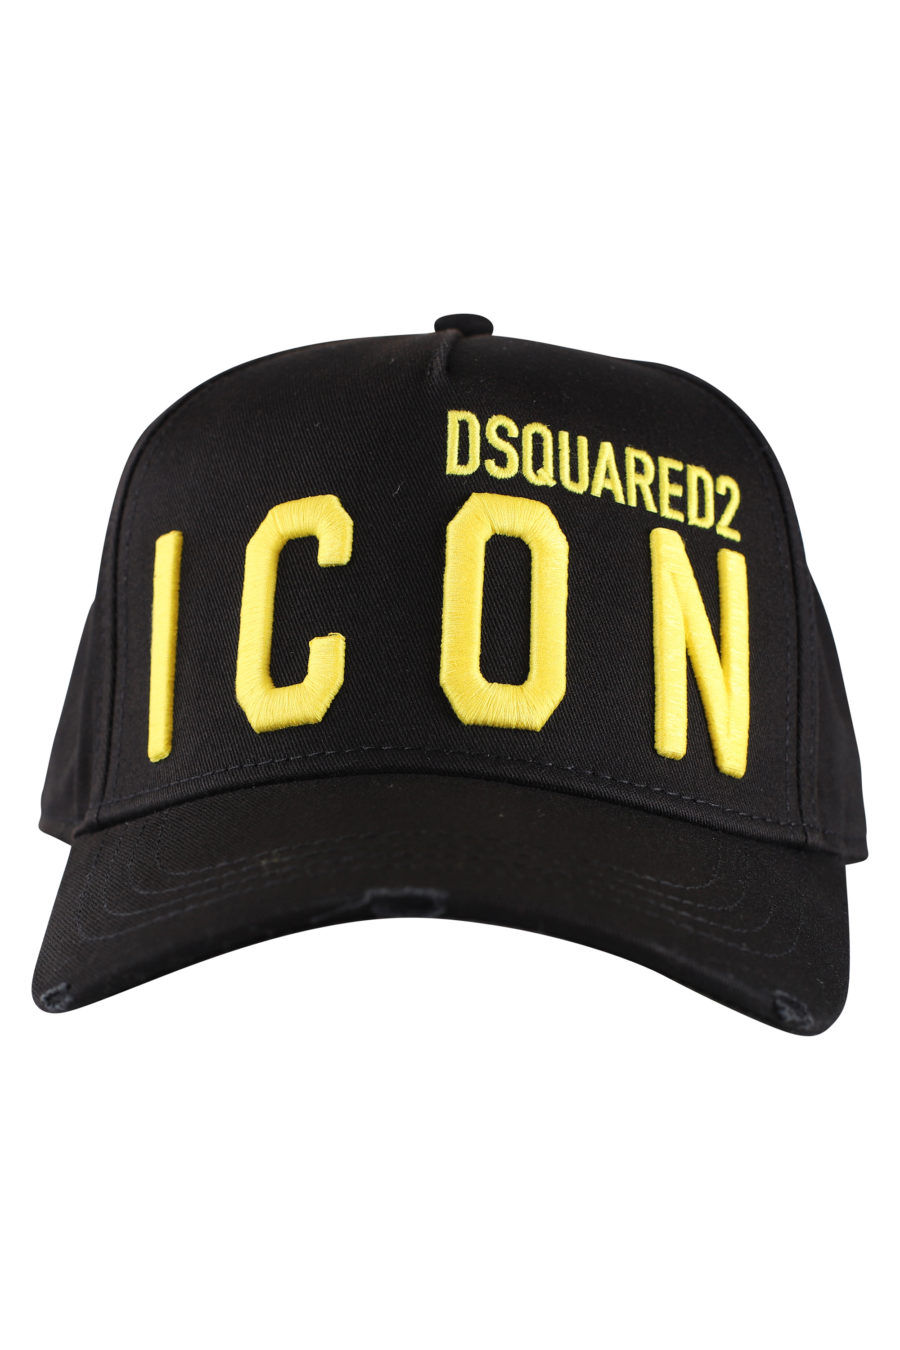 Gorra negra ajustable con logo "icon" amarillo - IMG 9986